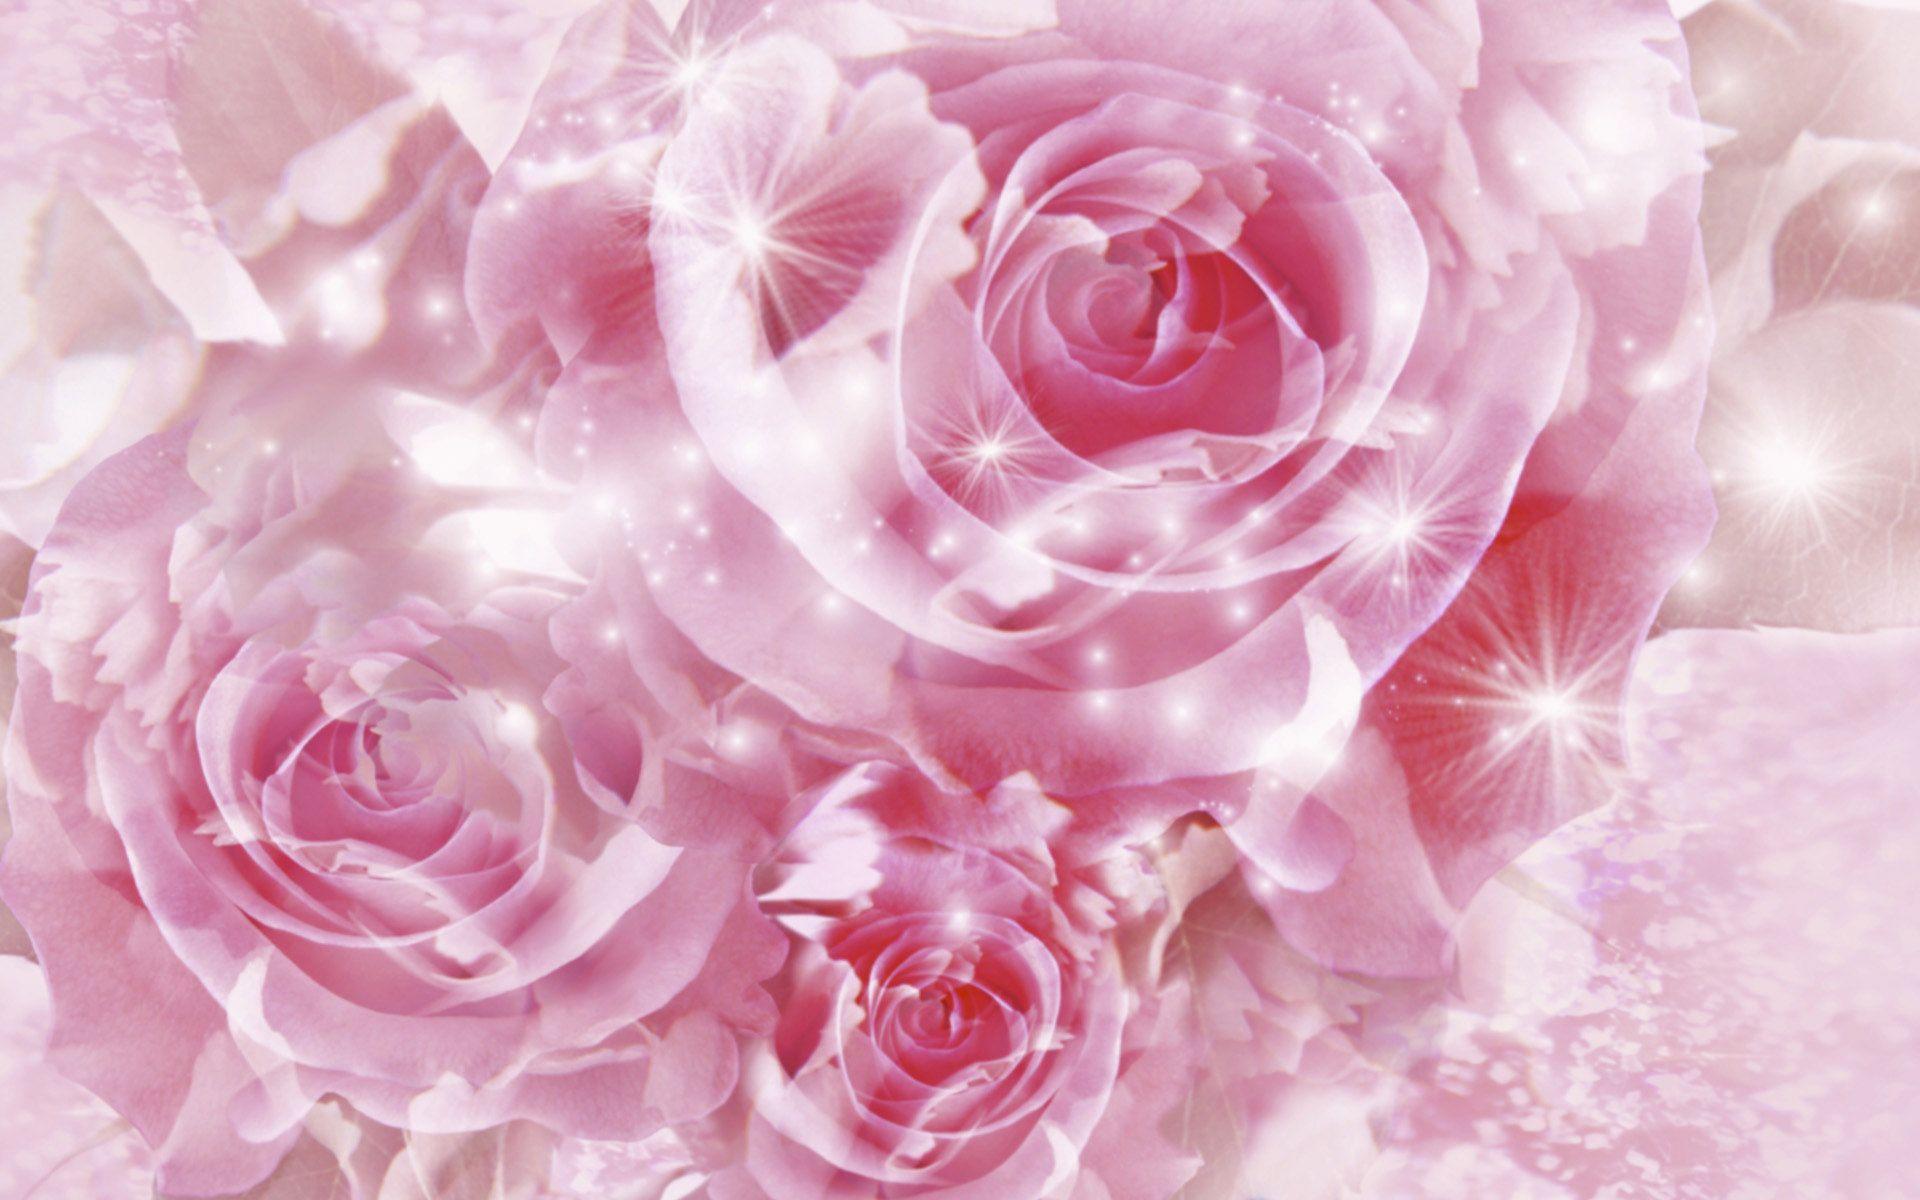 Hình nền hoa hồng: Chiêm ngưỡng những bông hoa hồng tươi sáng và đầy màu sắc trên hình nền hoa hồng đẹp nhất. Cảm nhận sự tinh tế trong cách bố trí màu sắc và kiểu dáng của từng bông hoa trên màn hình của bạn. Hình nền hoa hồng làm tăng nguồn năng lượng tích cực và nét đẹp cho mọi người.